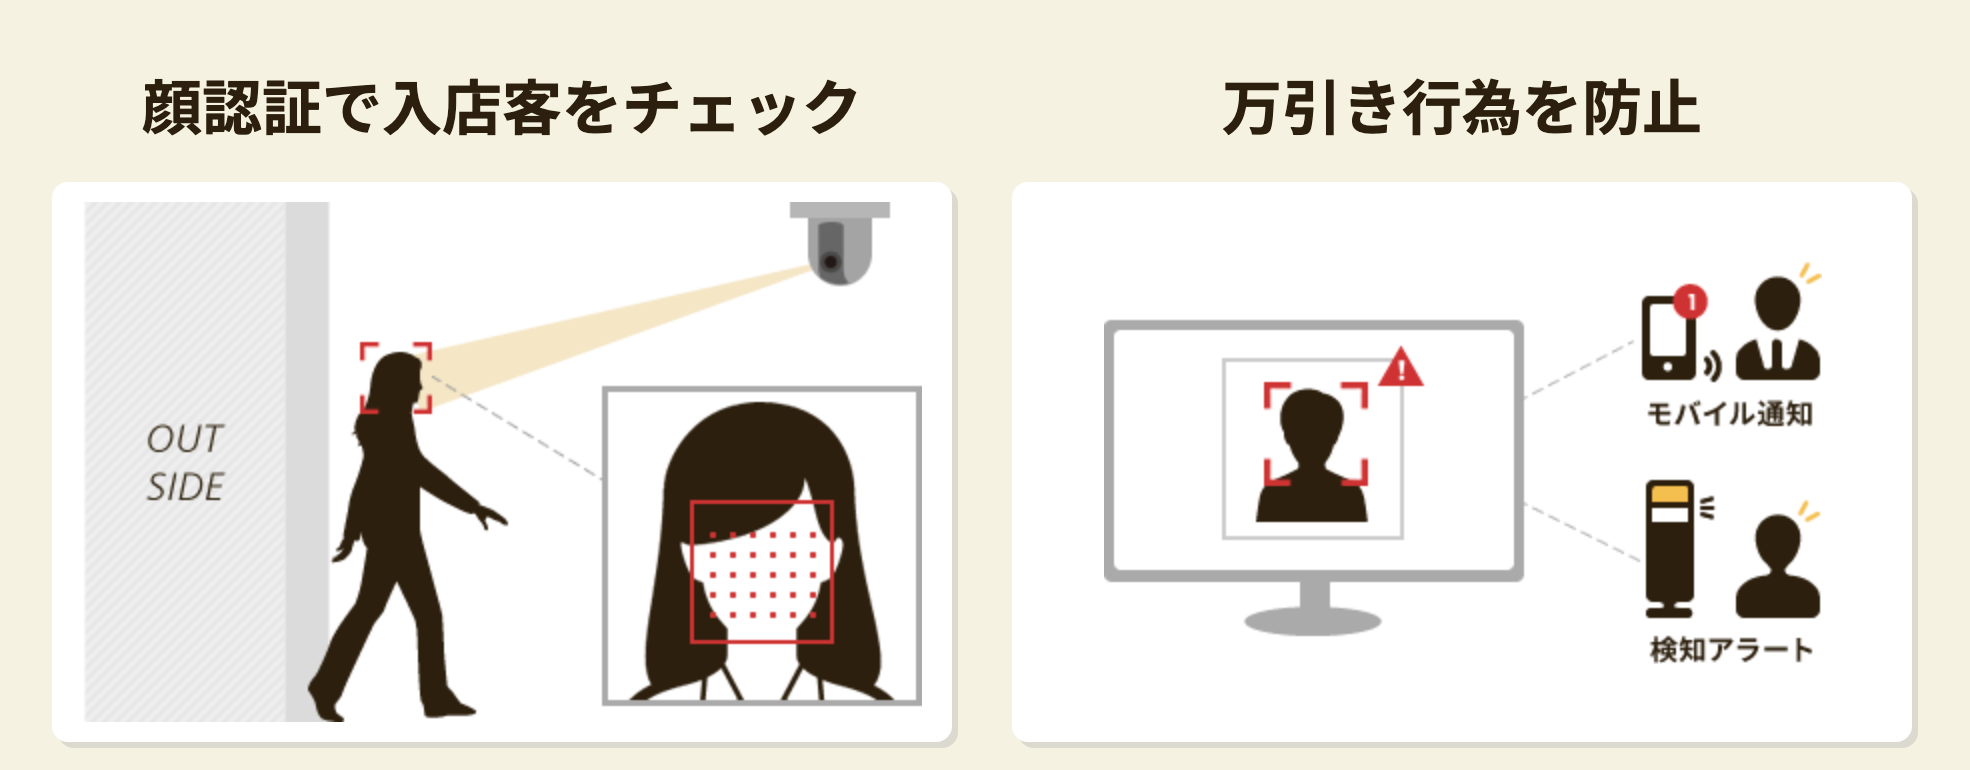 出典）顔認証万引き防止システム【LYKAON】-エナジール株式会社